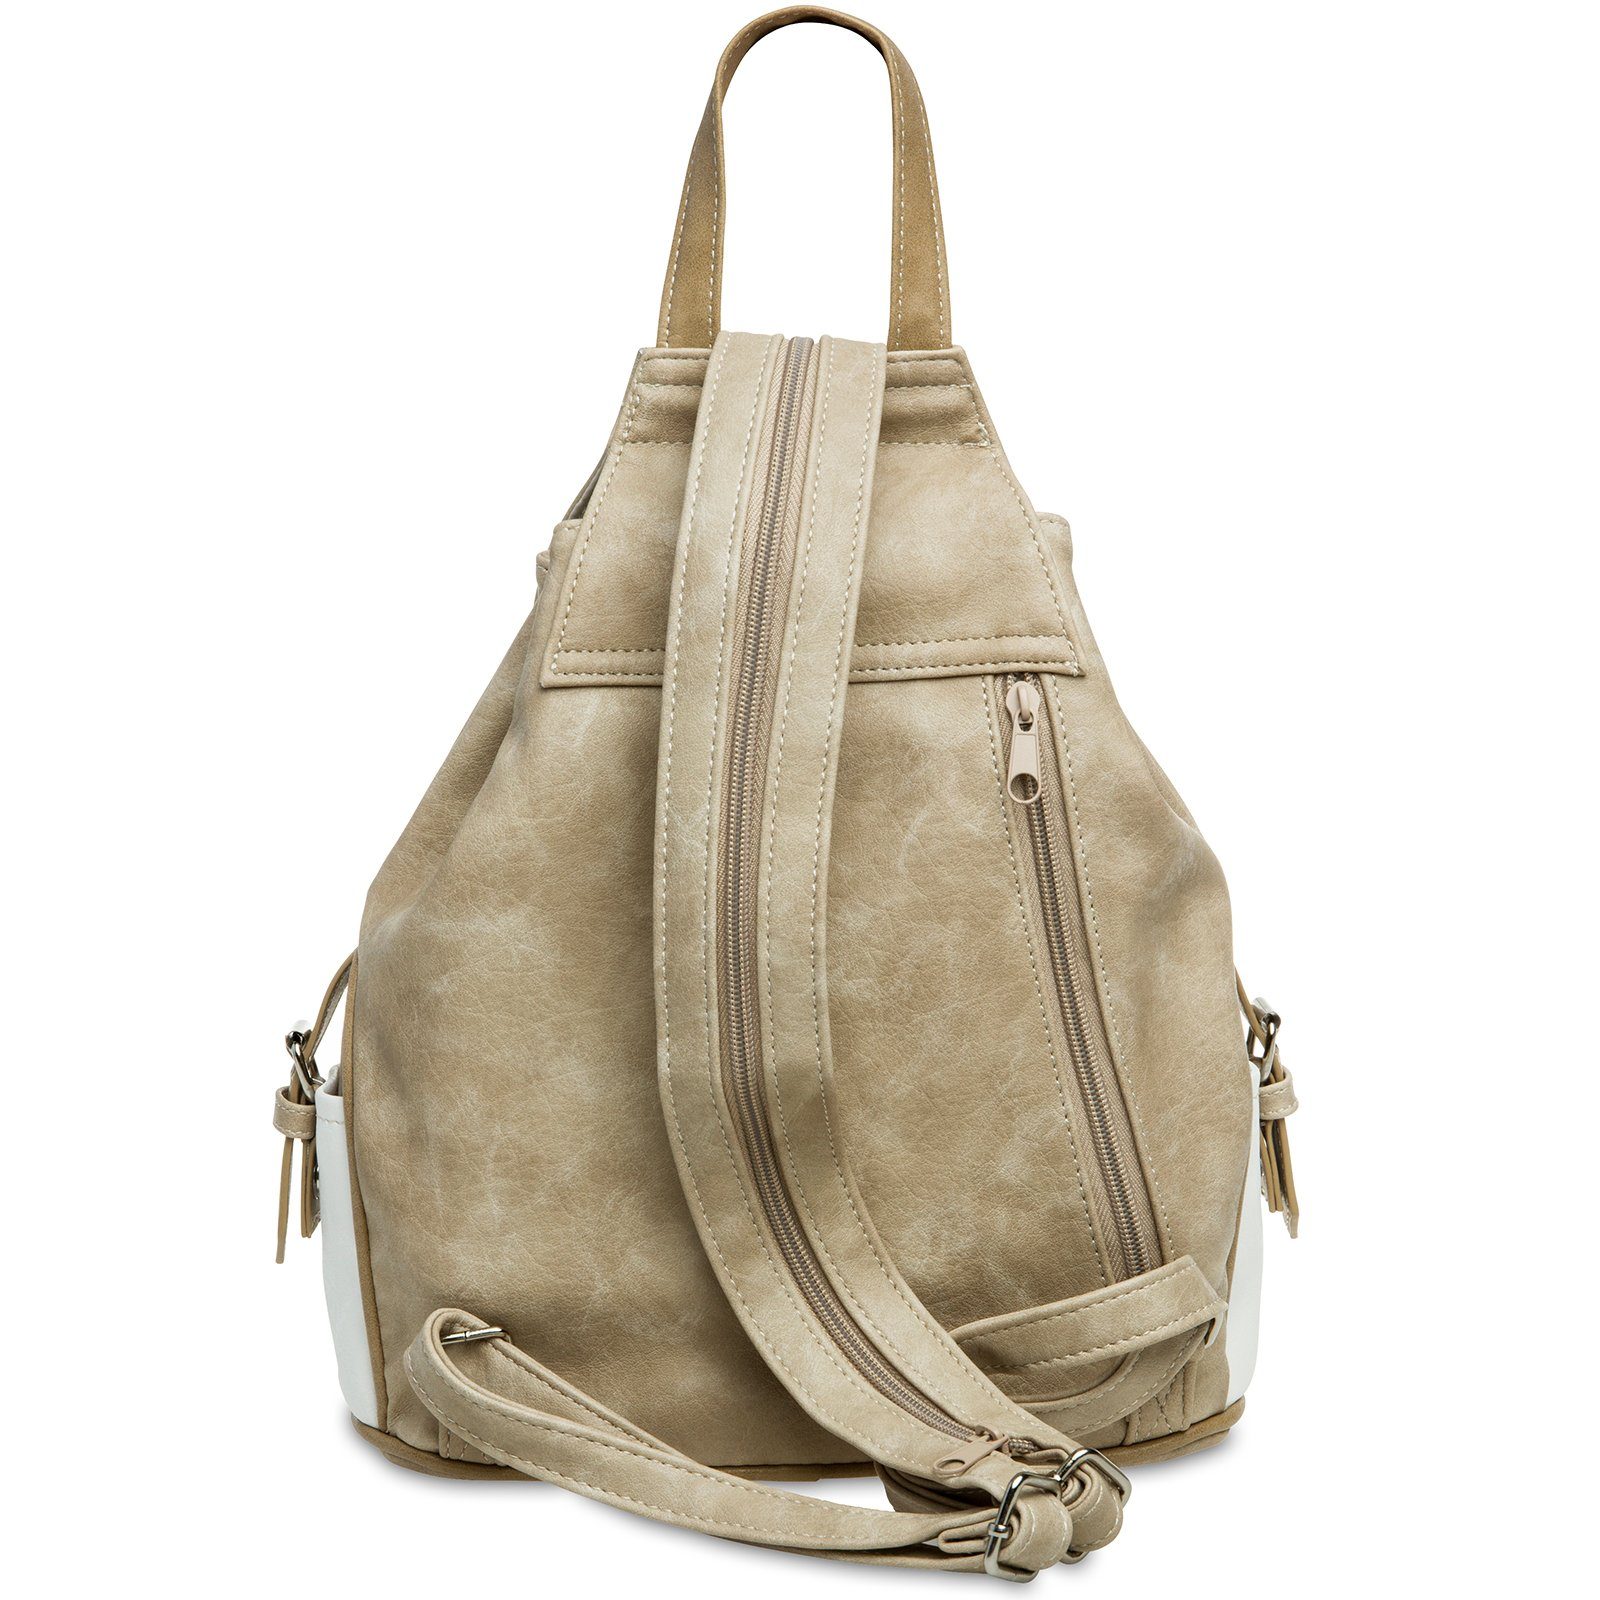 - Modelle Umhängetasche Rucksack TS1028 weiß Umhängetasche Damen diverse Tasche #15117 Rucksack Handtasche Caspar beige